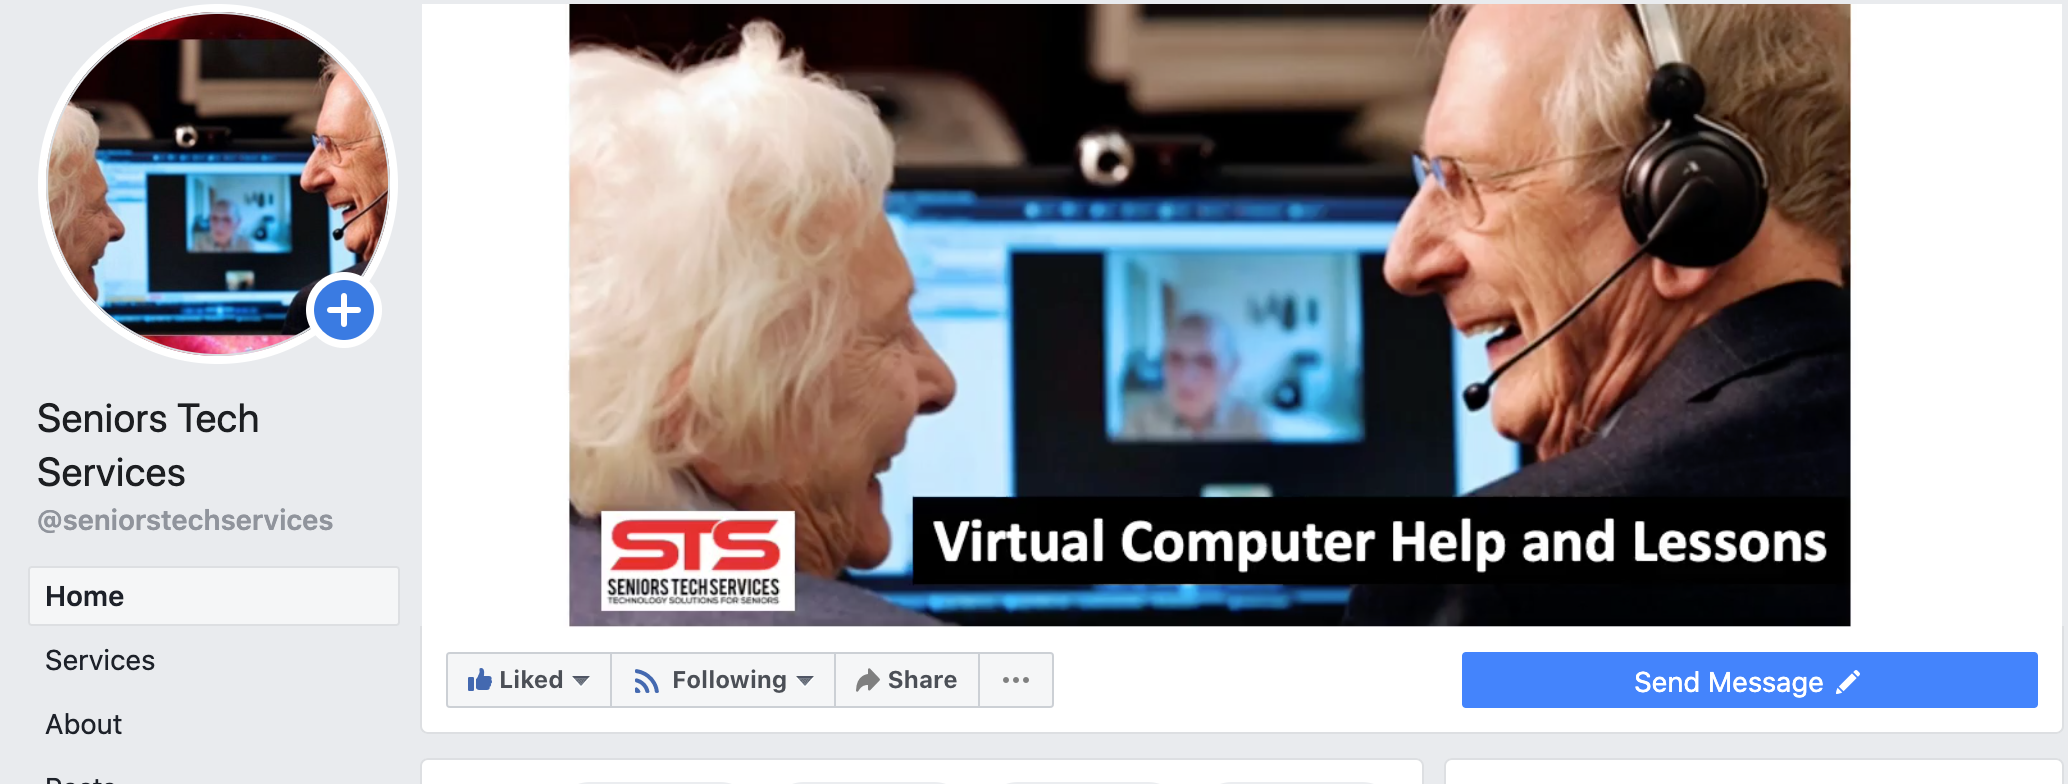 Seniors Tech Services on Facebook